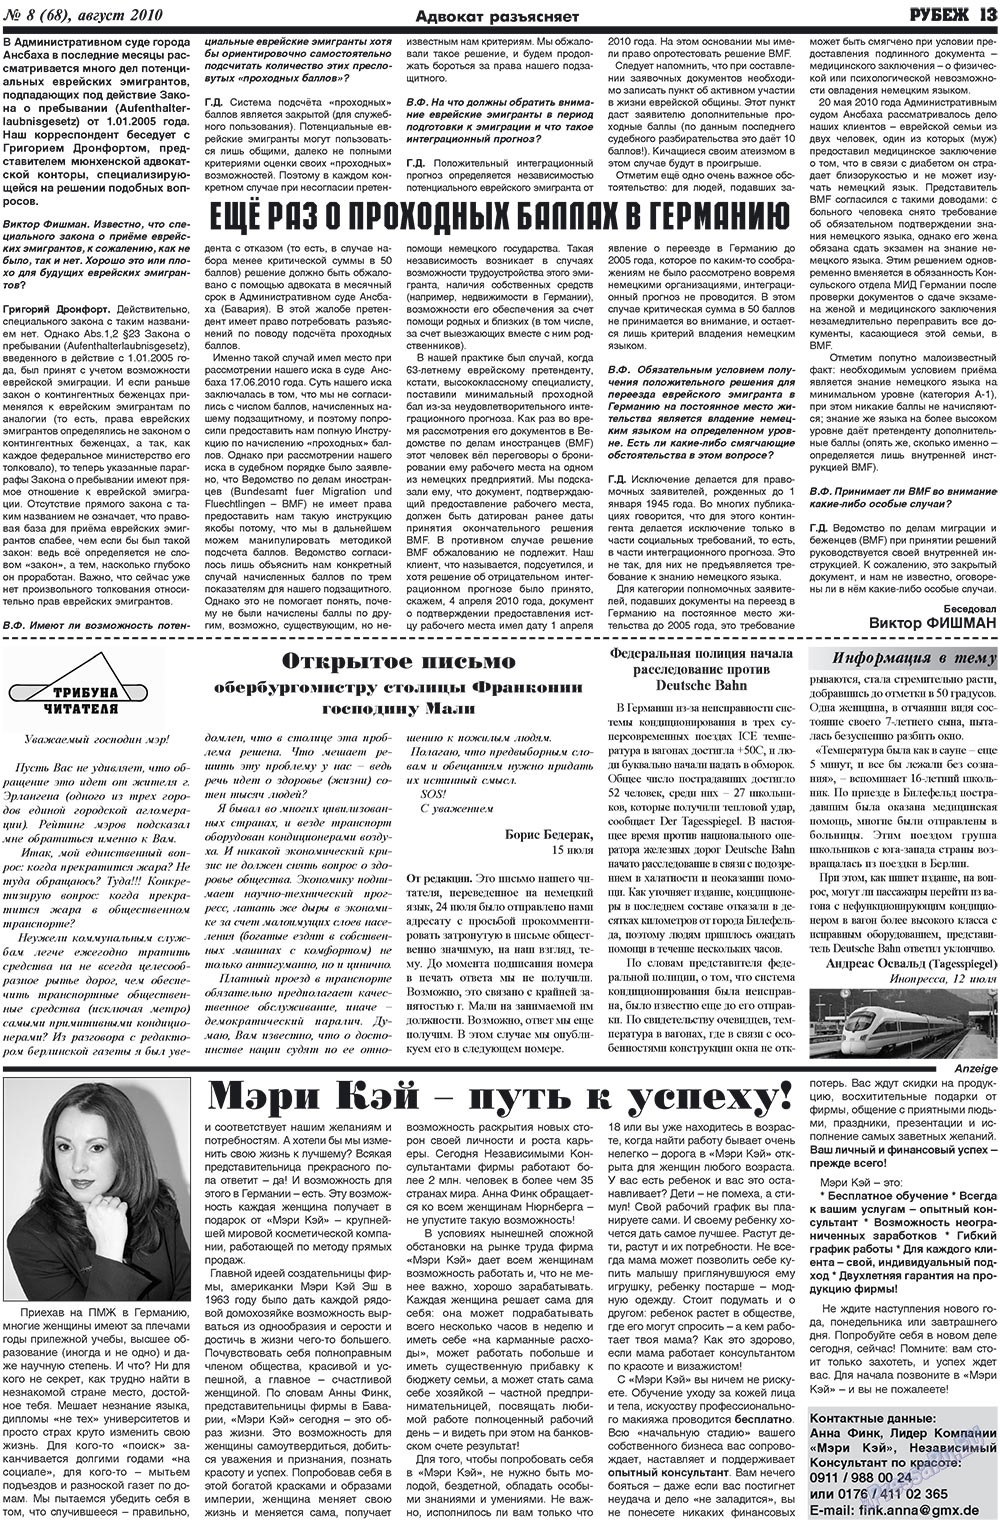 Рубеж (газета). 2010 год, номер 8, стр. 13